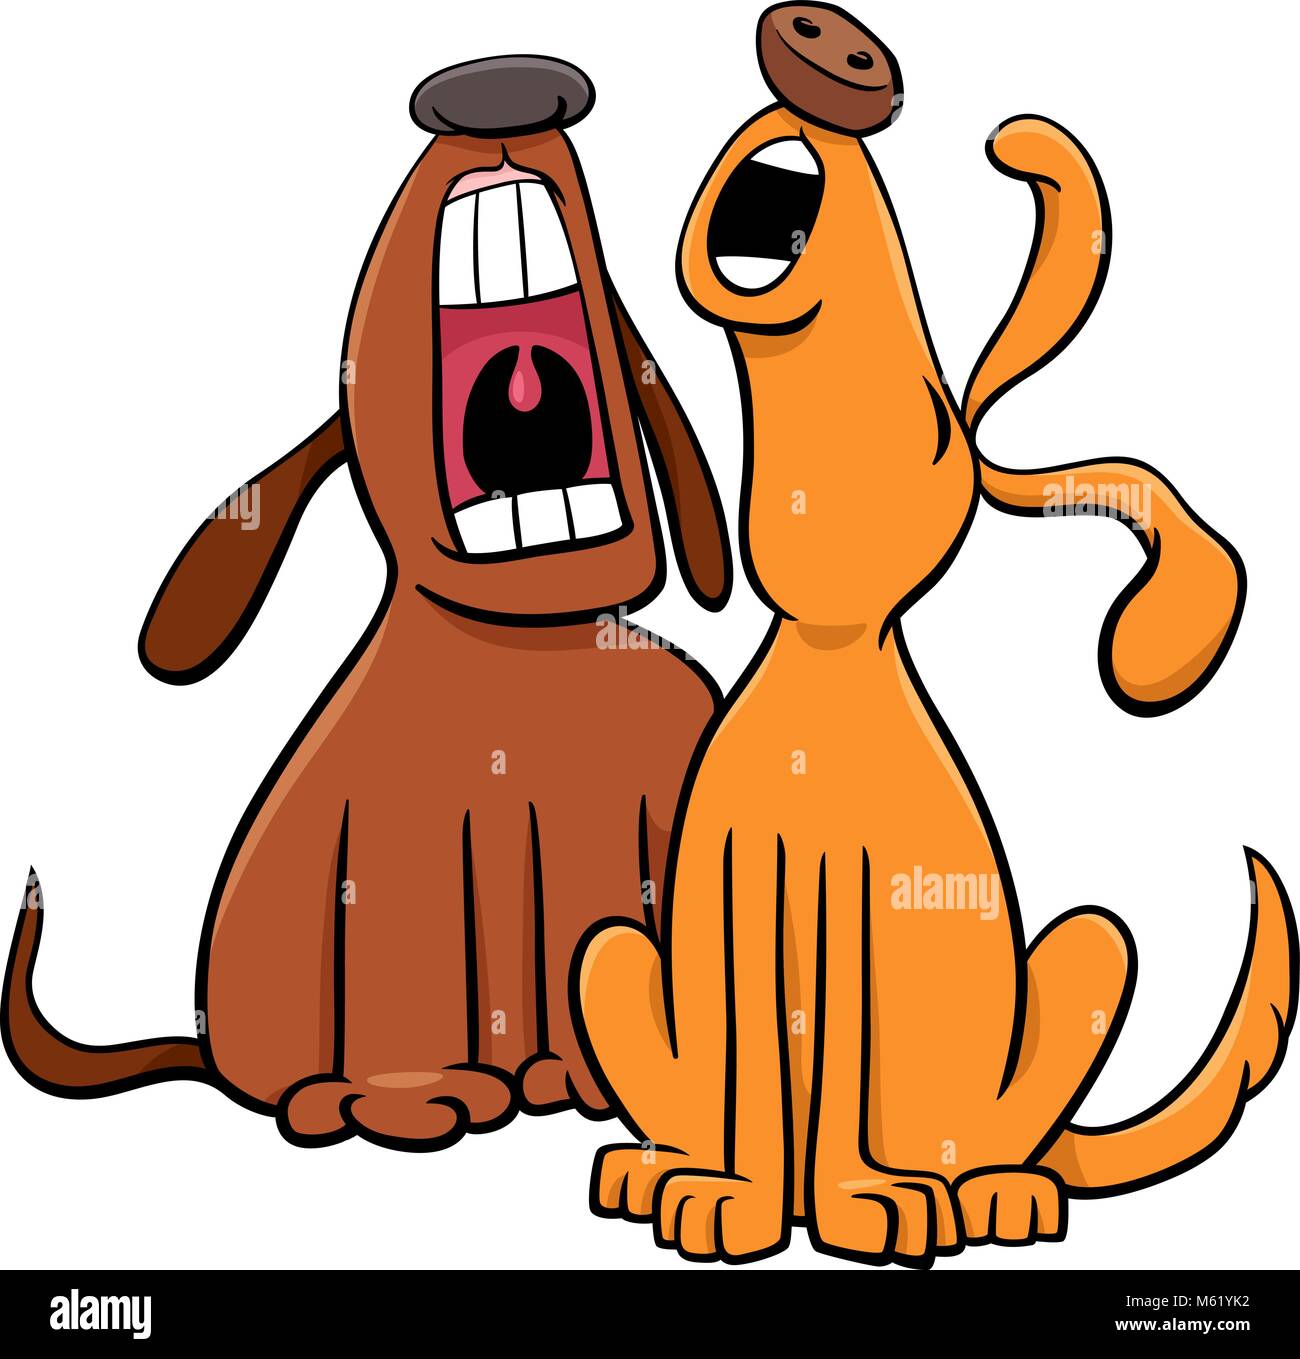 Cartoon Ilustración de dos personajes de animales perros ladrando o aullando Ilustración del Vector